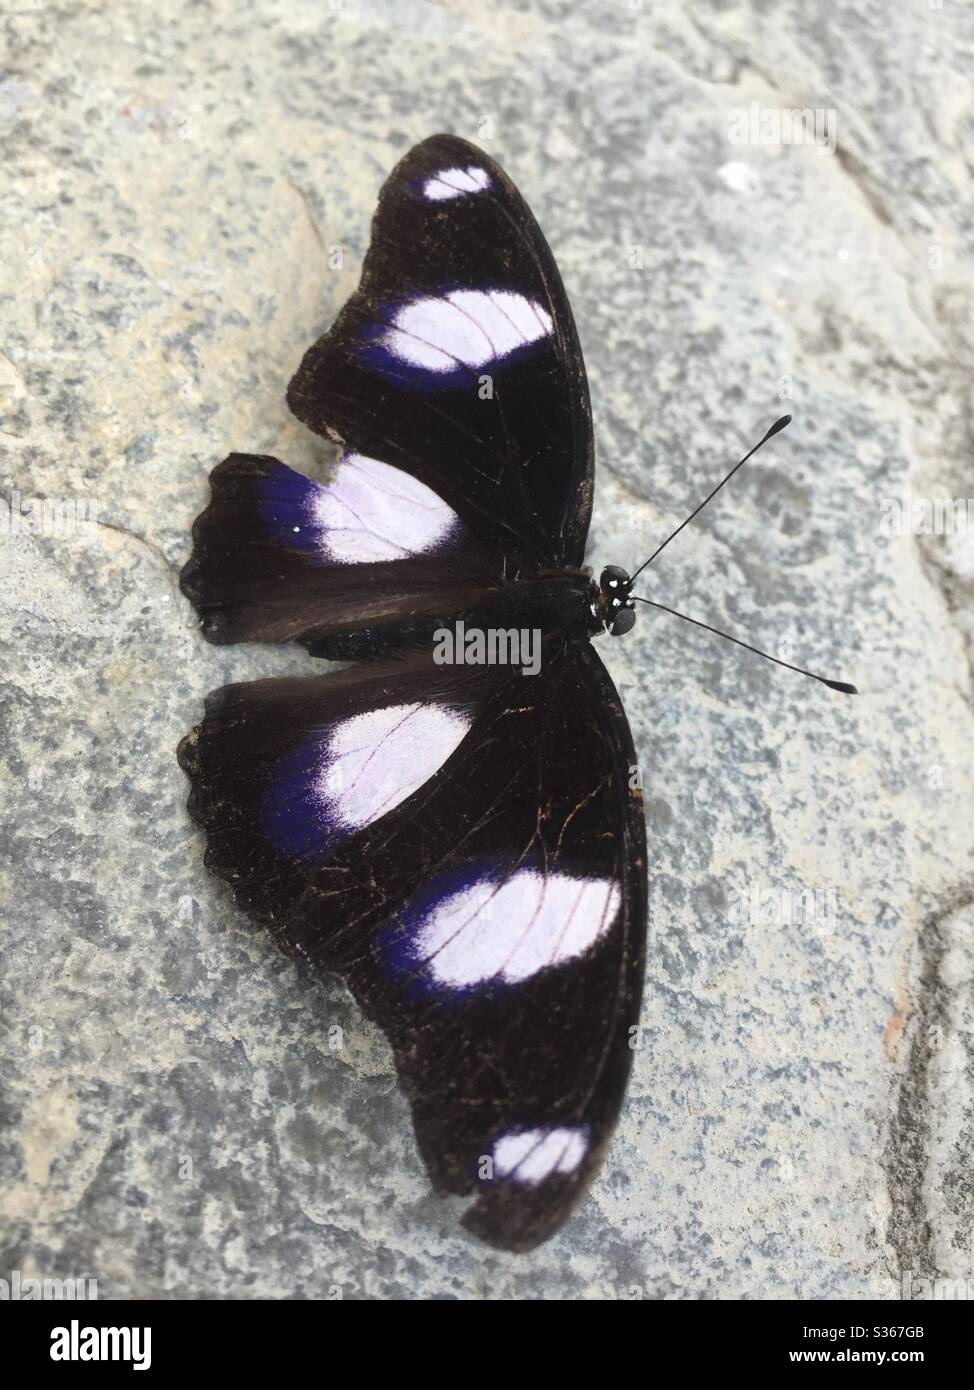 Ein Fang eines Schmetterlings, der nach einem Spaziergang durch die Winde ruht und seine einzigartigen Muster zeigt. Stockfoto